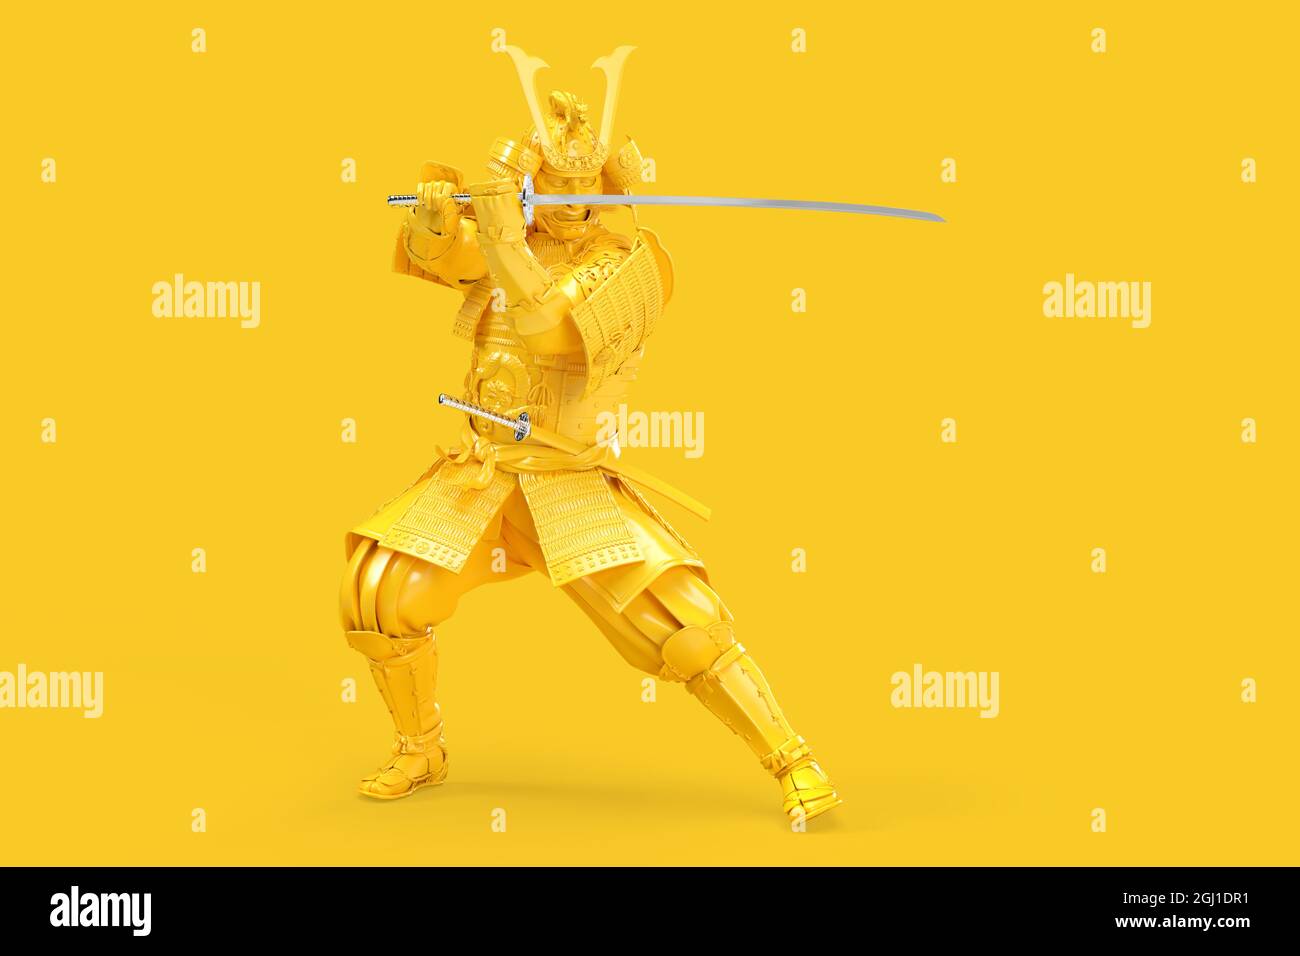 Guerrier samouraï avec épée katana en posture défensive. Illustration 3D. Banque D'Images